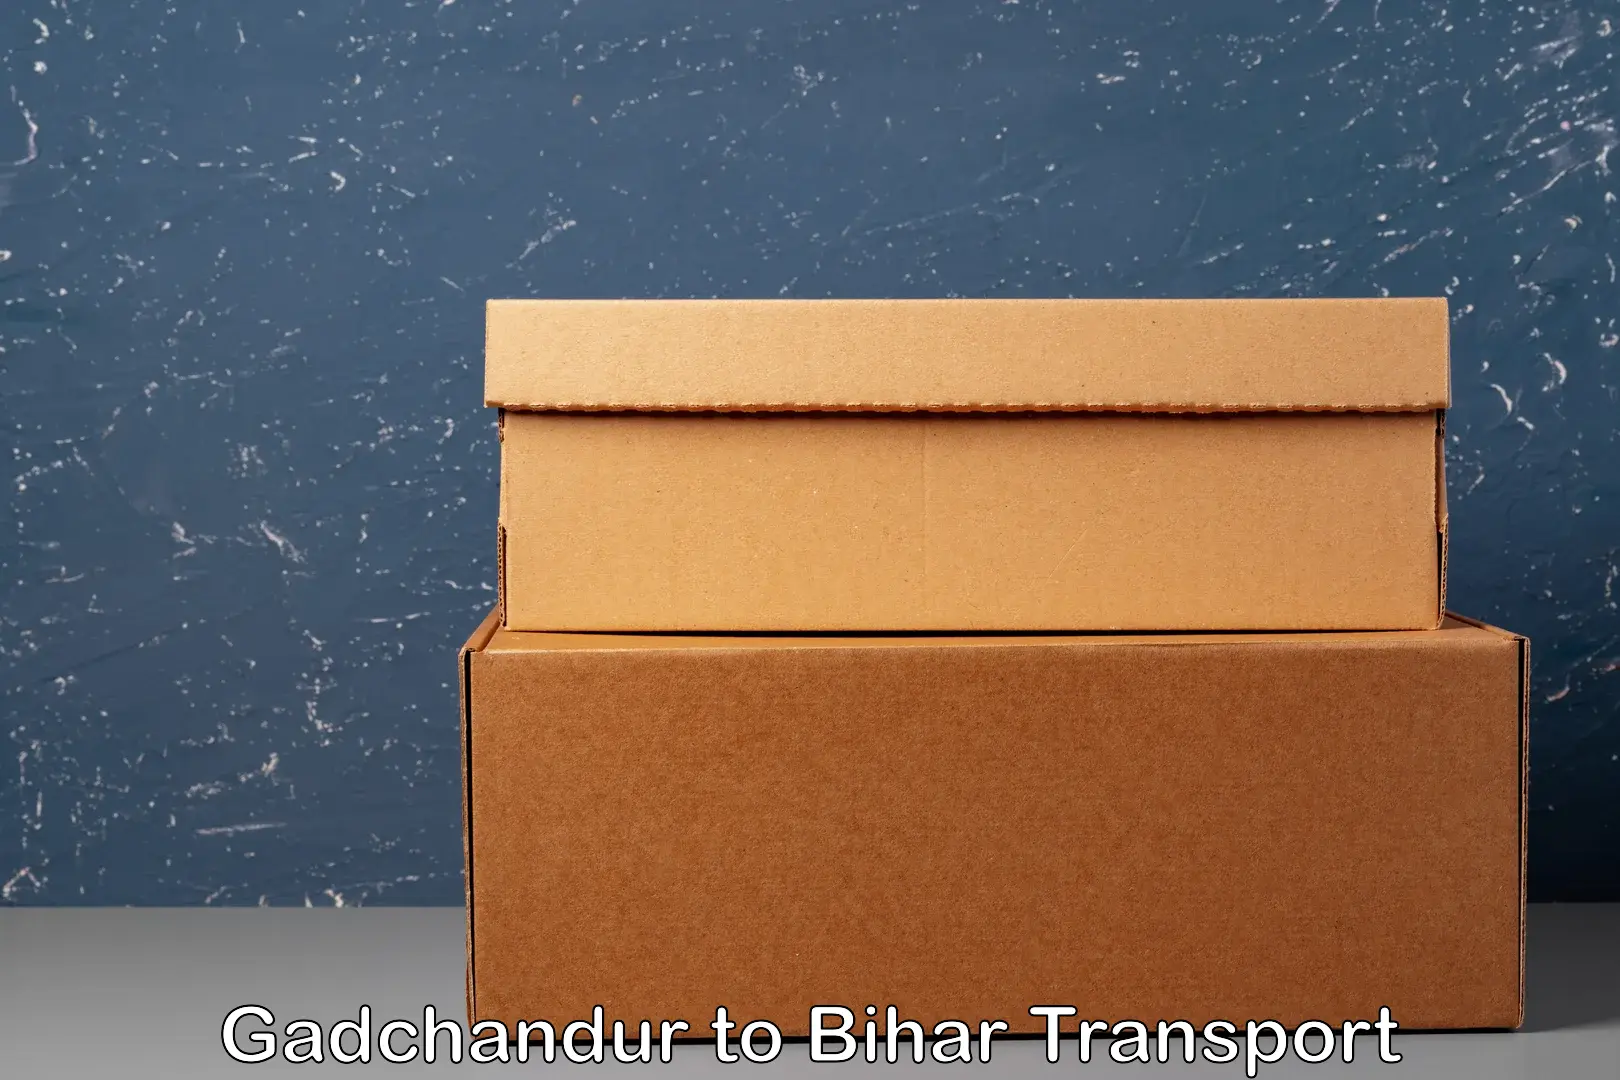 Interstate transport services Gadchandur to Bihar